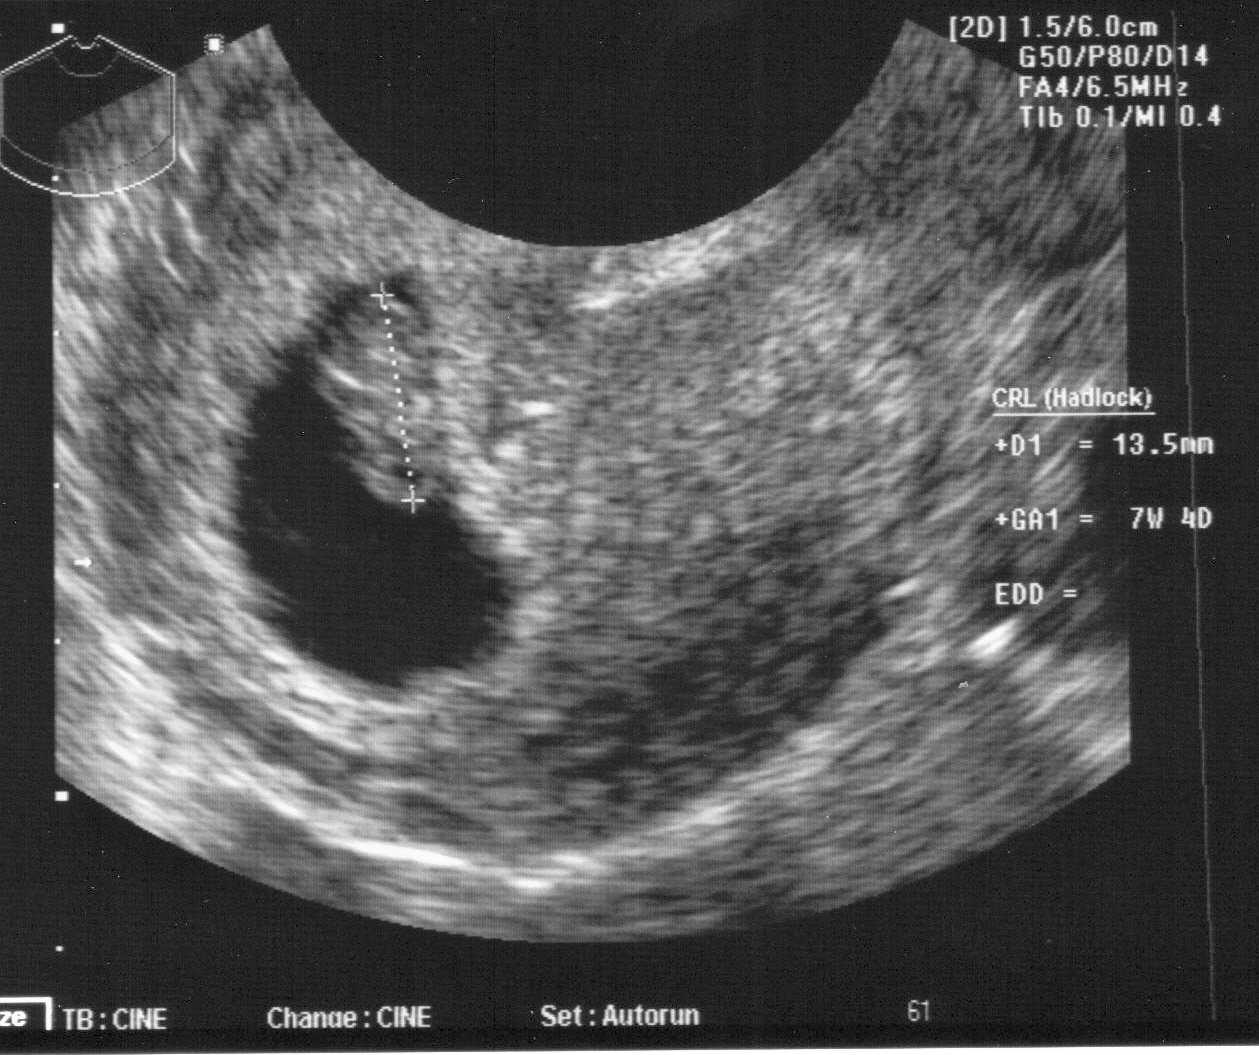 6 неделя беременности (46 фото): что происходит с малышом и мамой на 6 акушерской неделе или 4 от зачатия, симптомы, развитие и ощущения, простуда